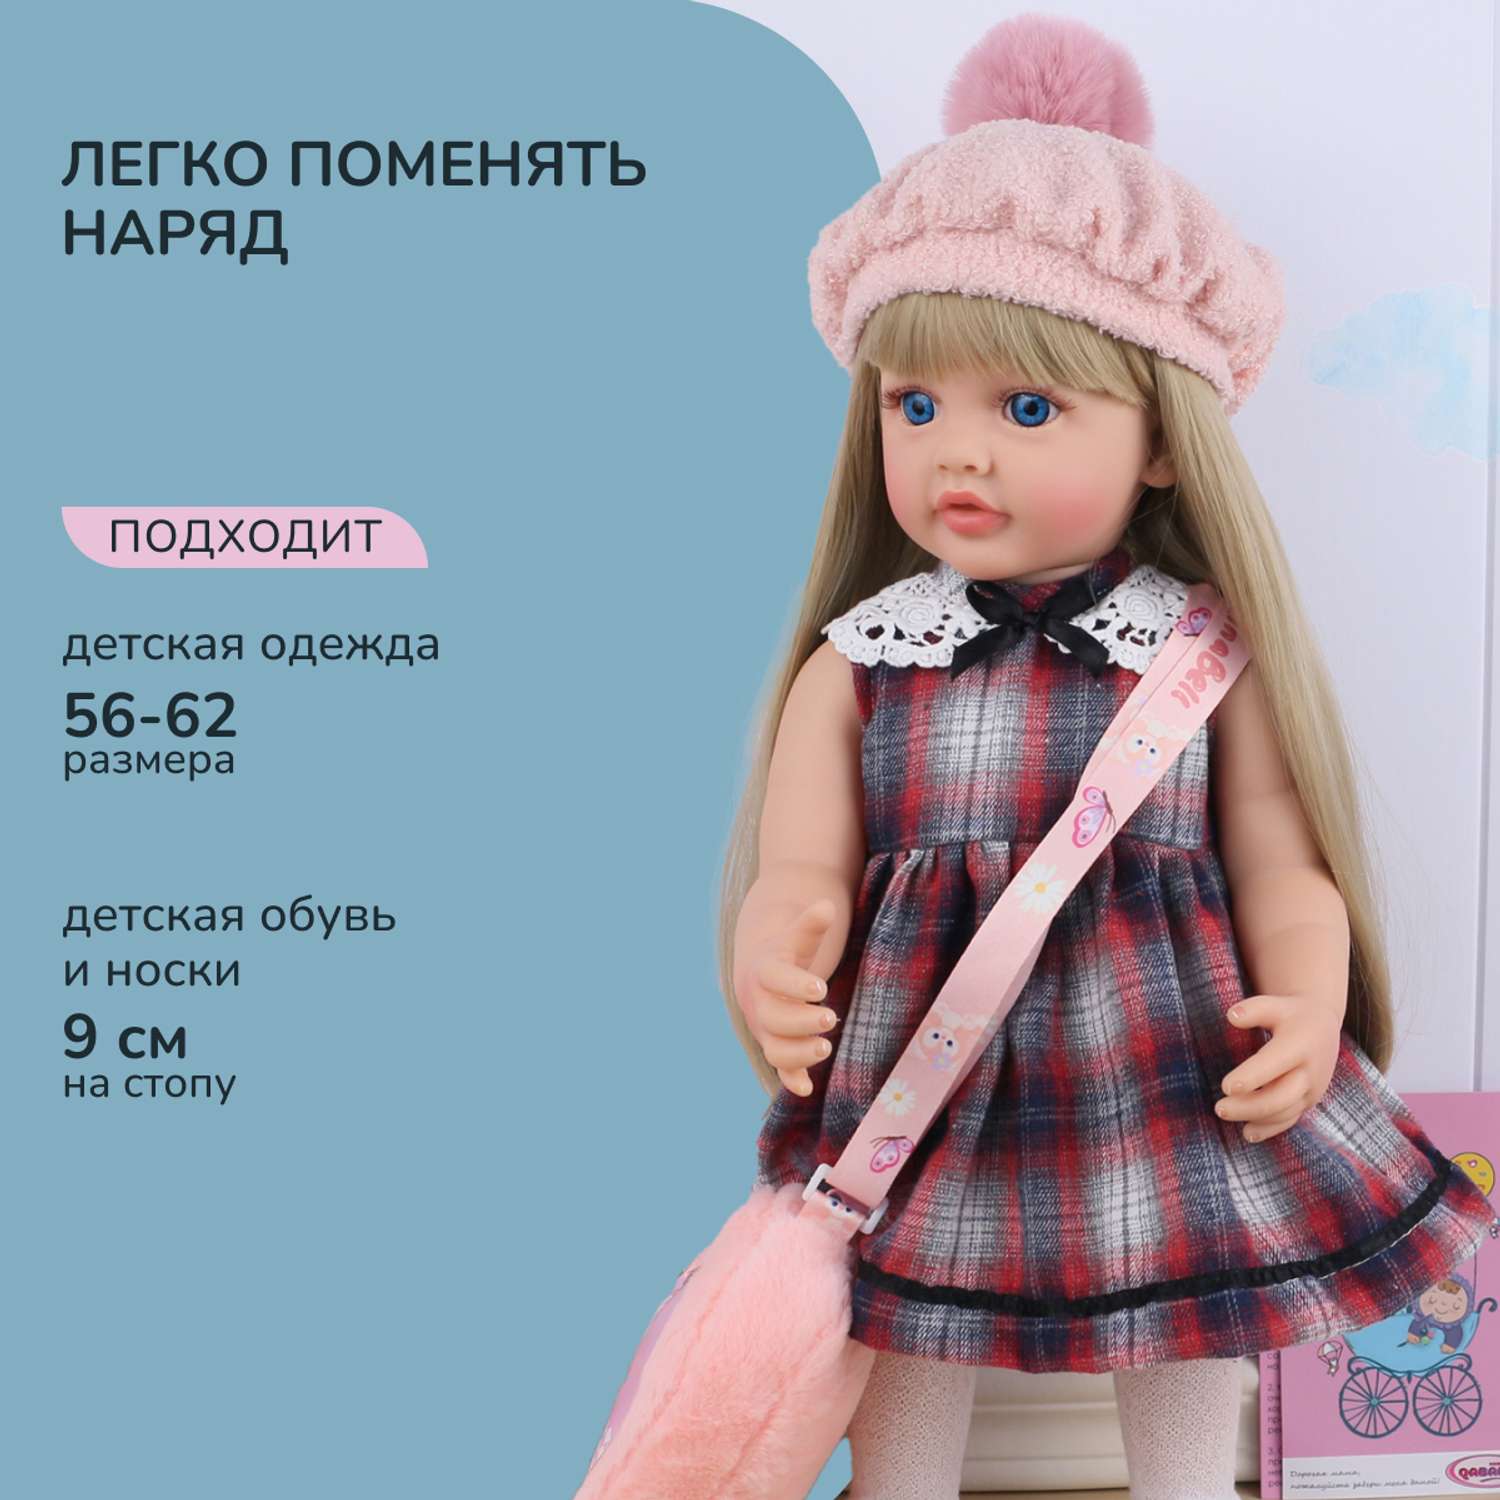 Кукла Реборн QA BABY Марианна большая пупс набор игрушки для девочки 55 см 5553 - фото 9